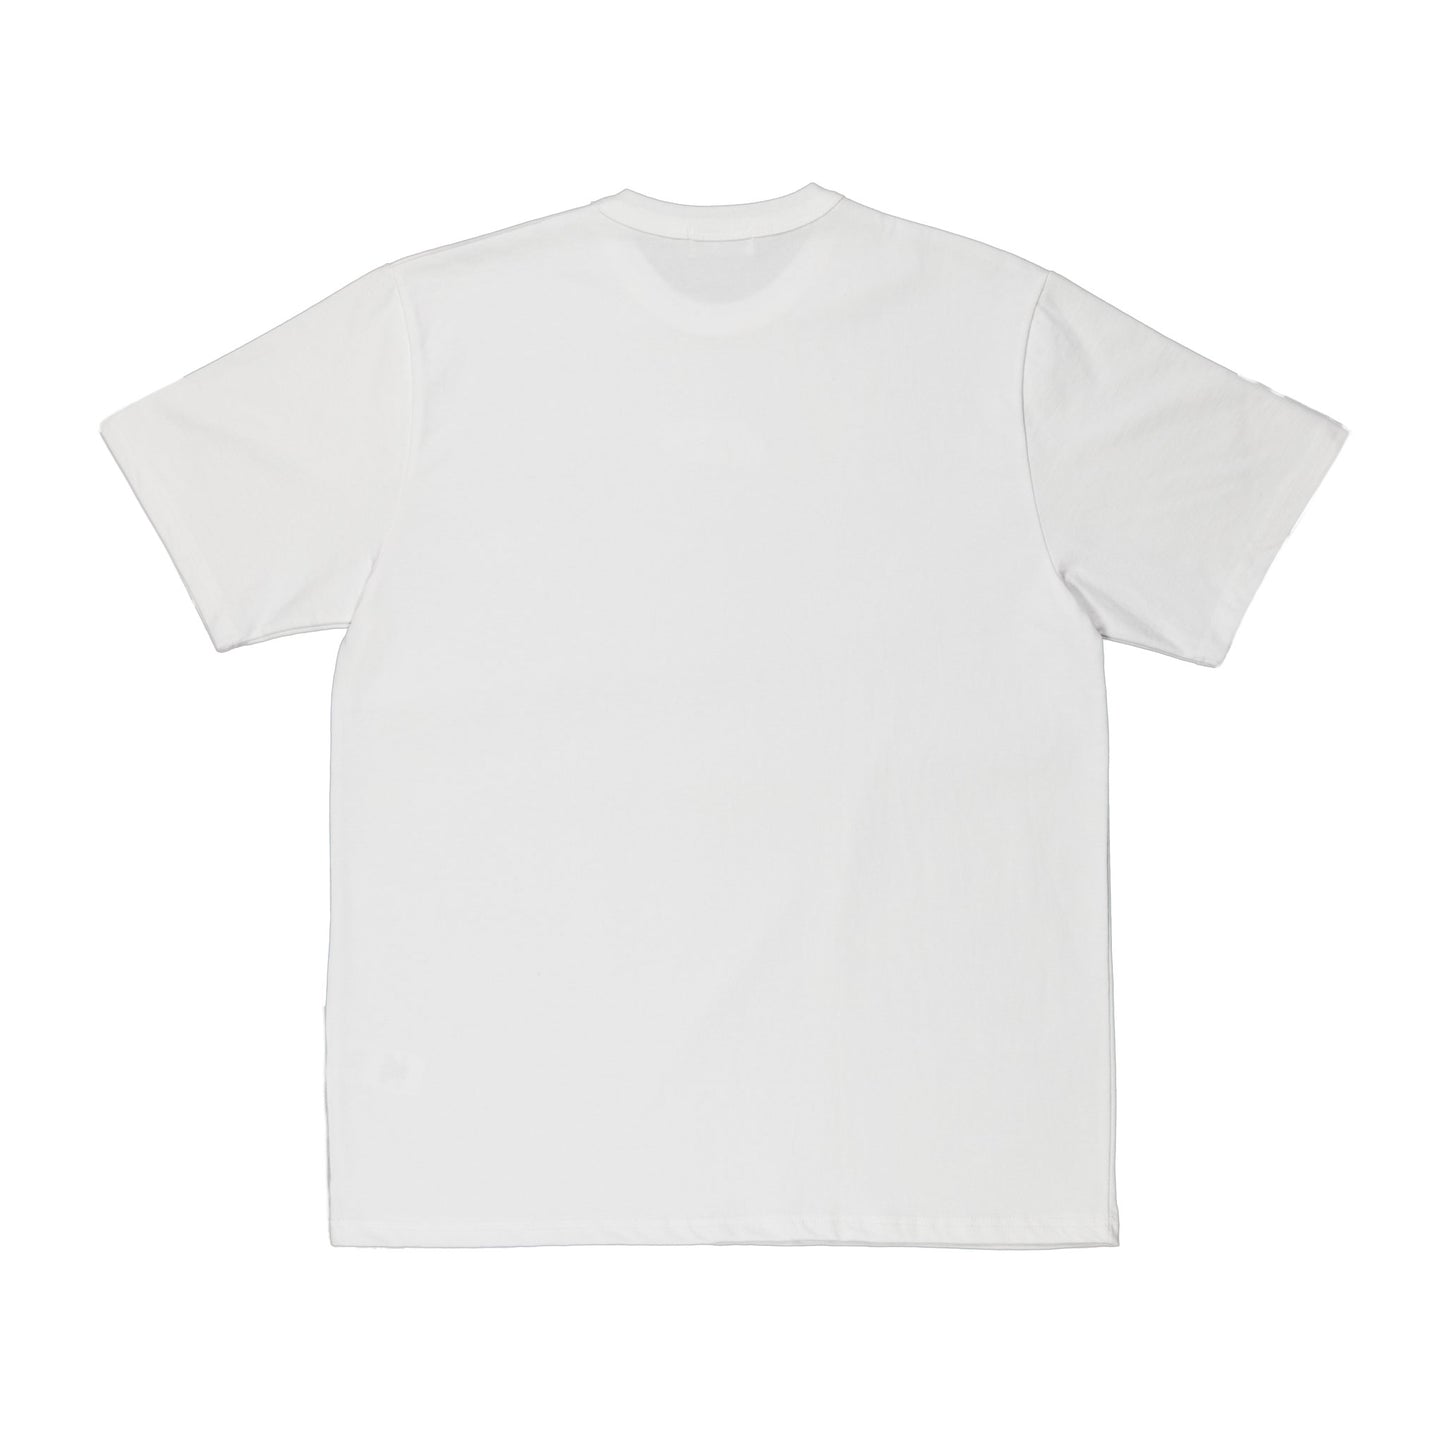 CAPYBARA TEE (White) - YIKEY CLOTHING CO.